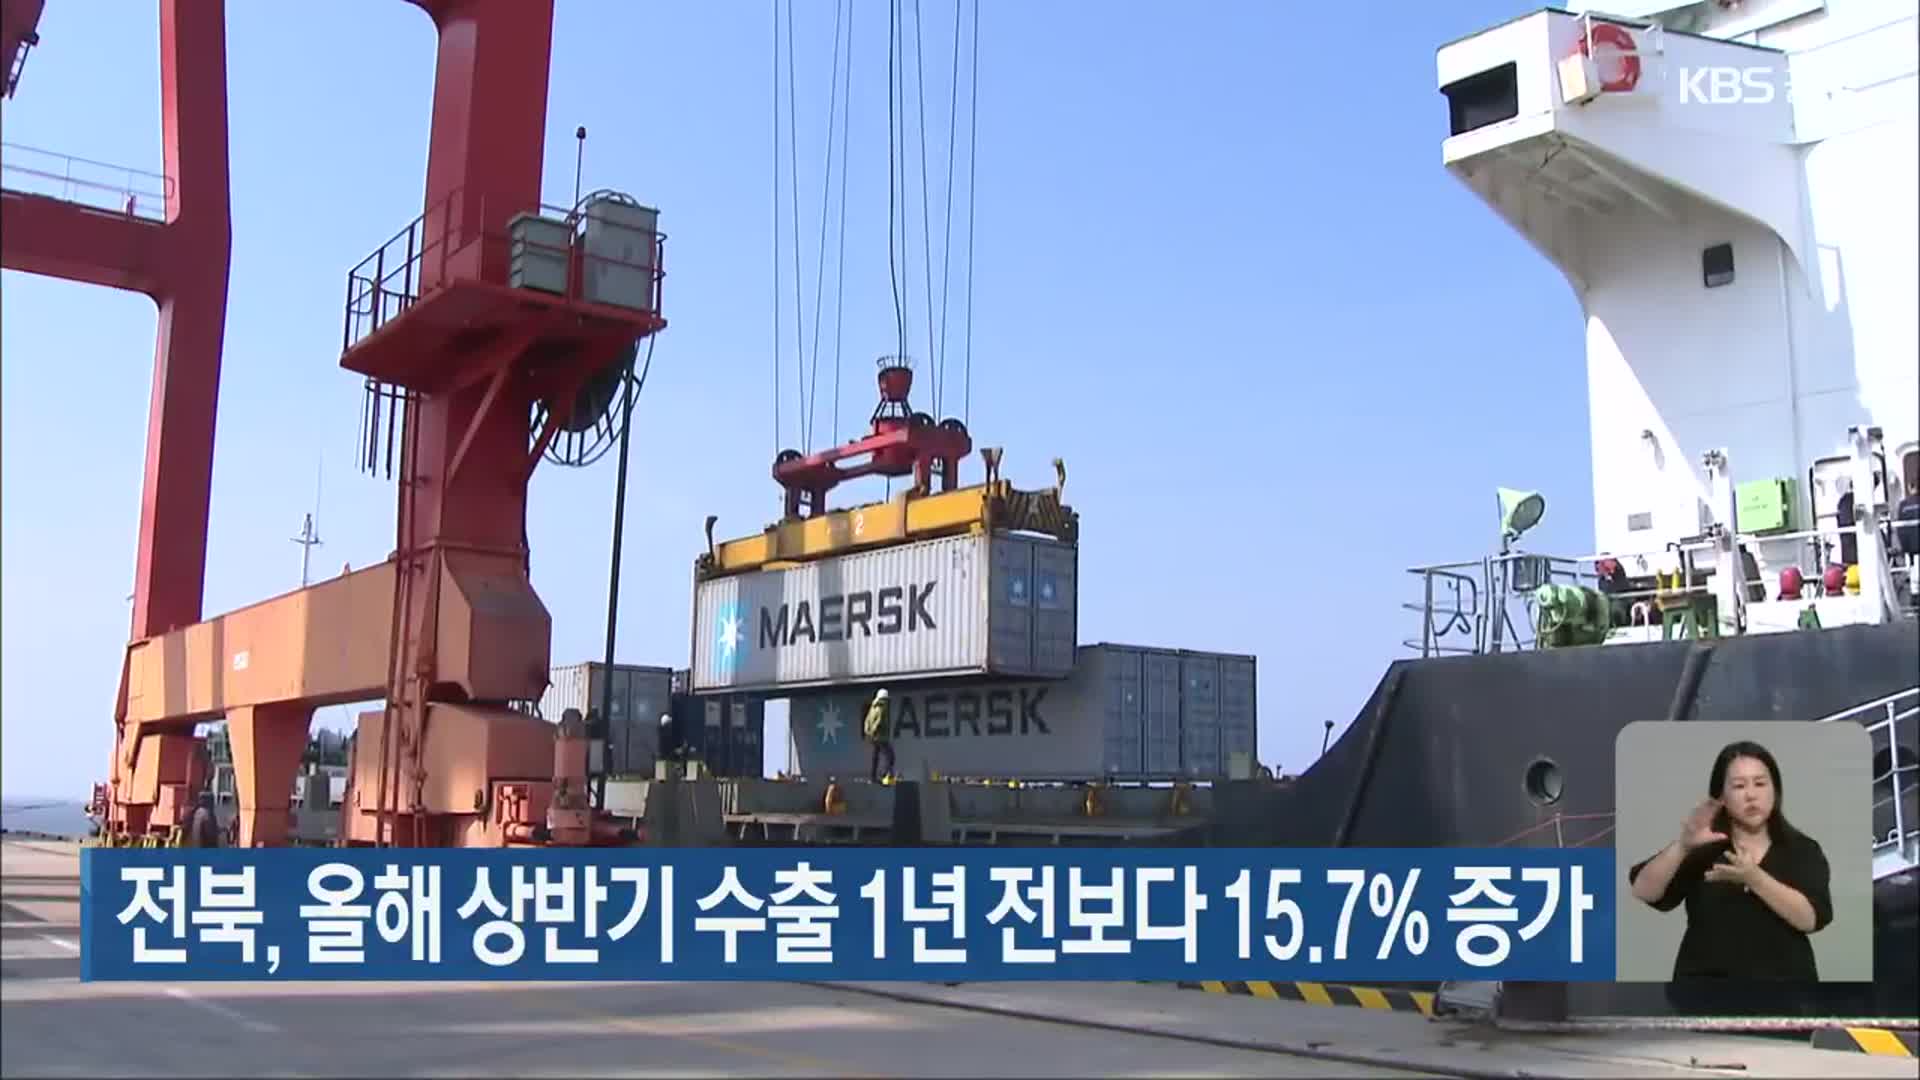 전북, 올해 상반기 수출 1년 전보다 15.7% 증가